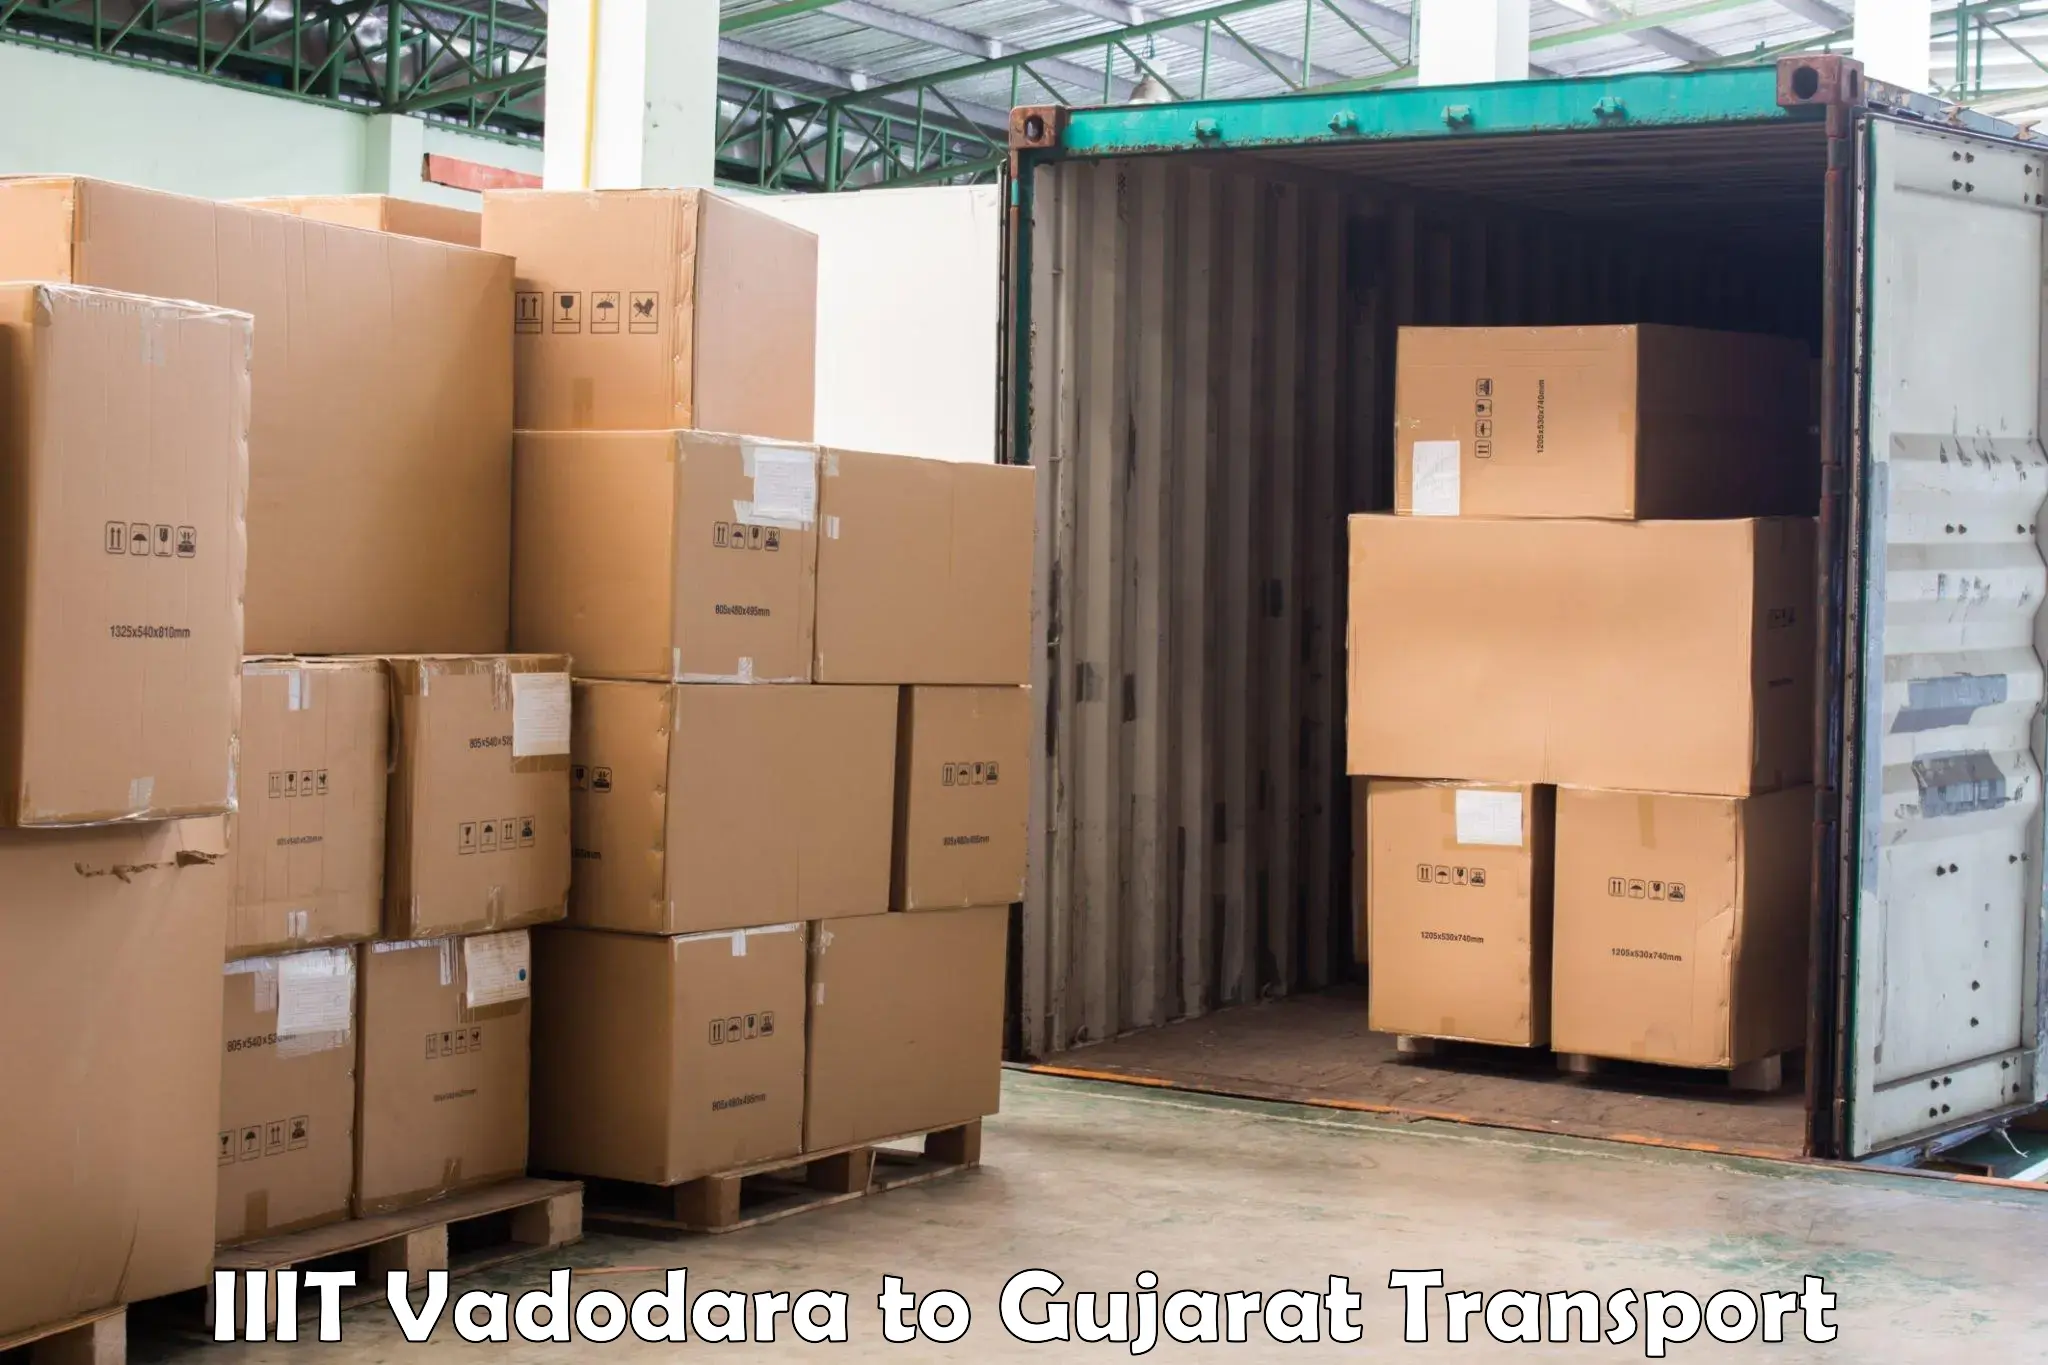 Online transport service IIIT Vadodara to Vijapur